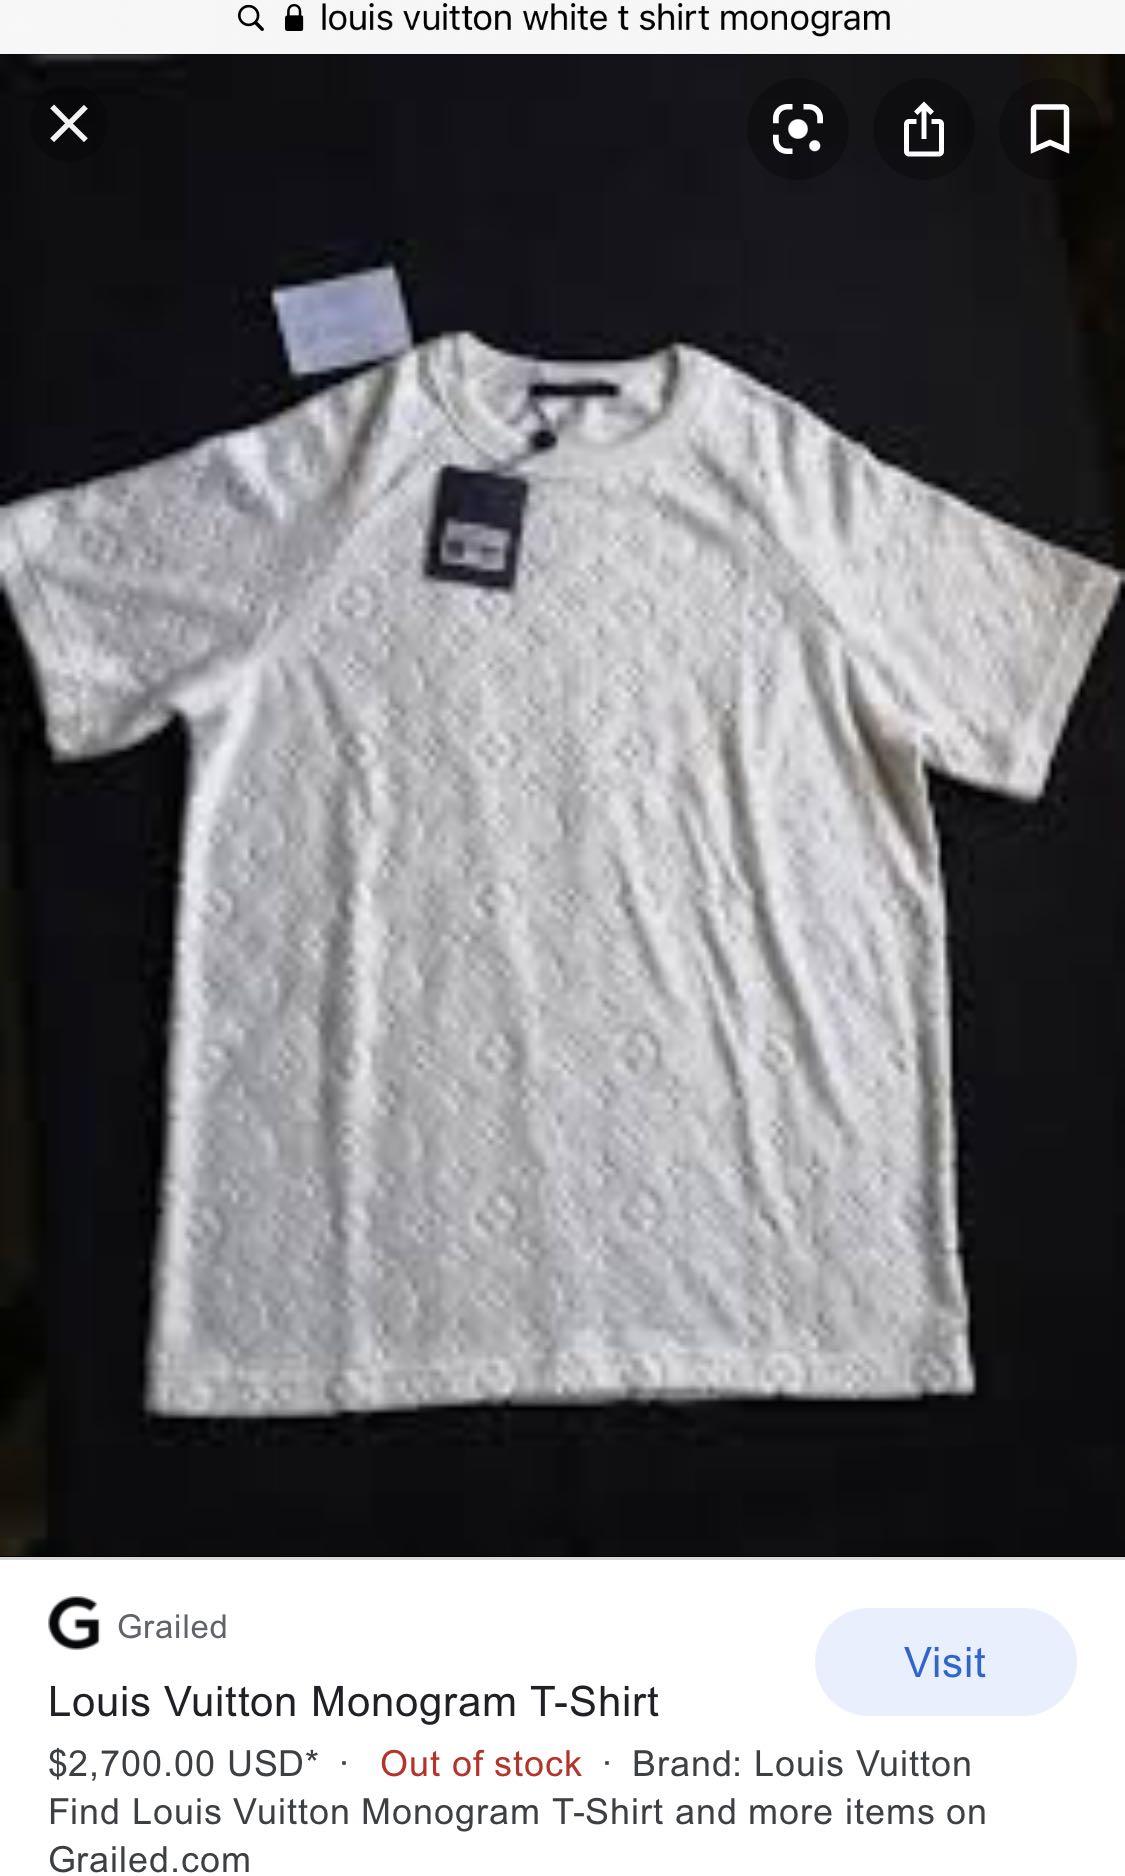 Louis Vuitton Monogram On Right Half White Polo Shirt - Tagotee